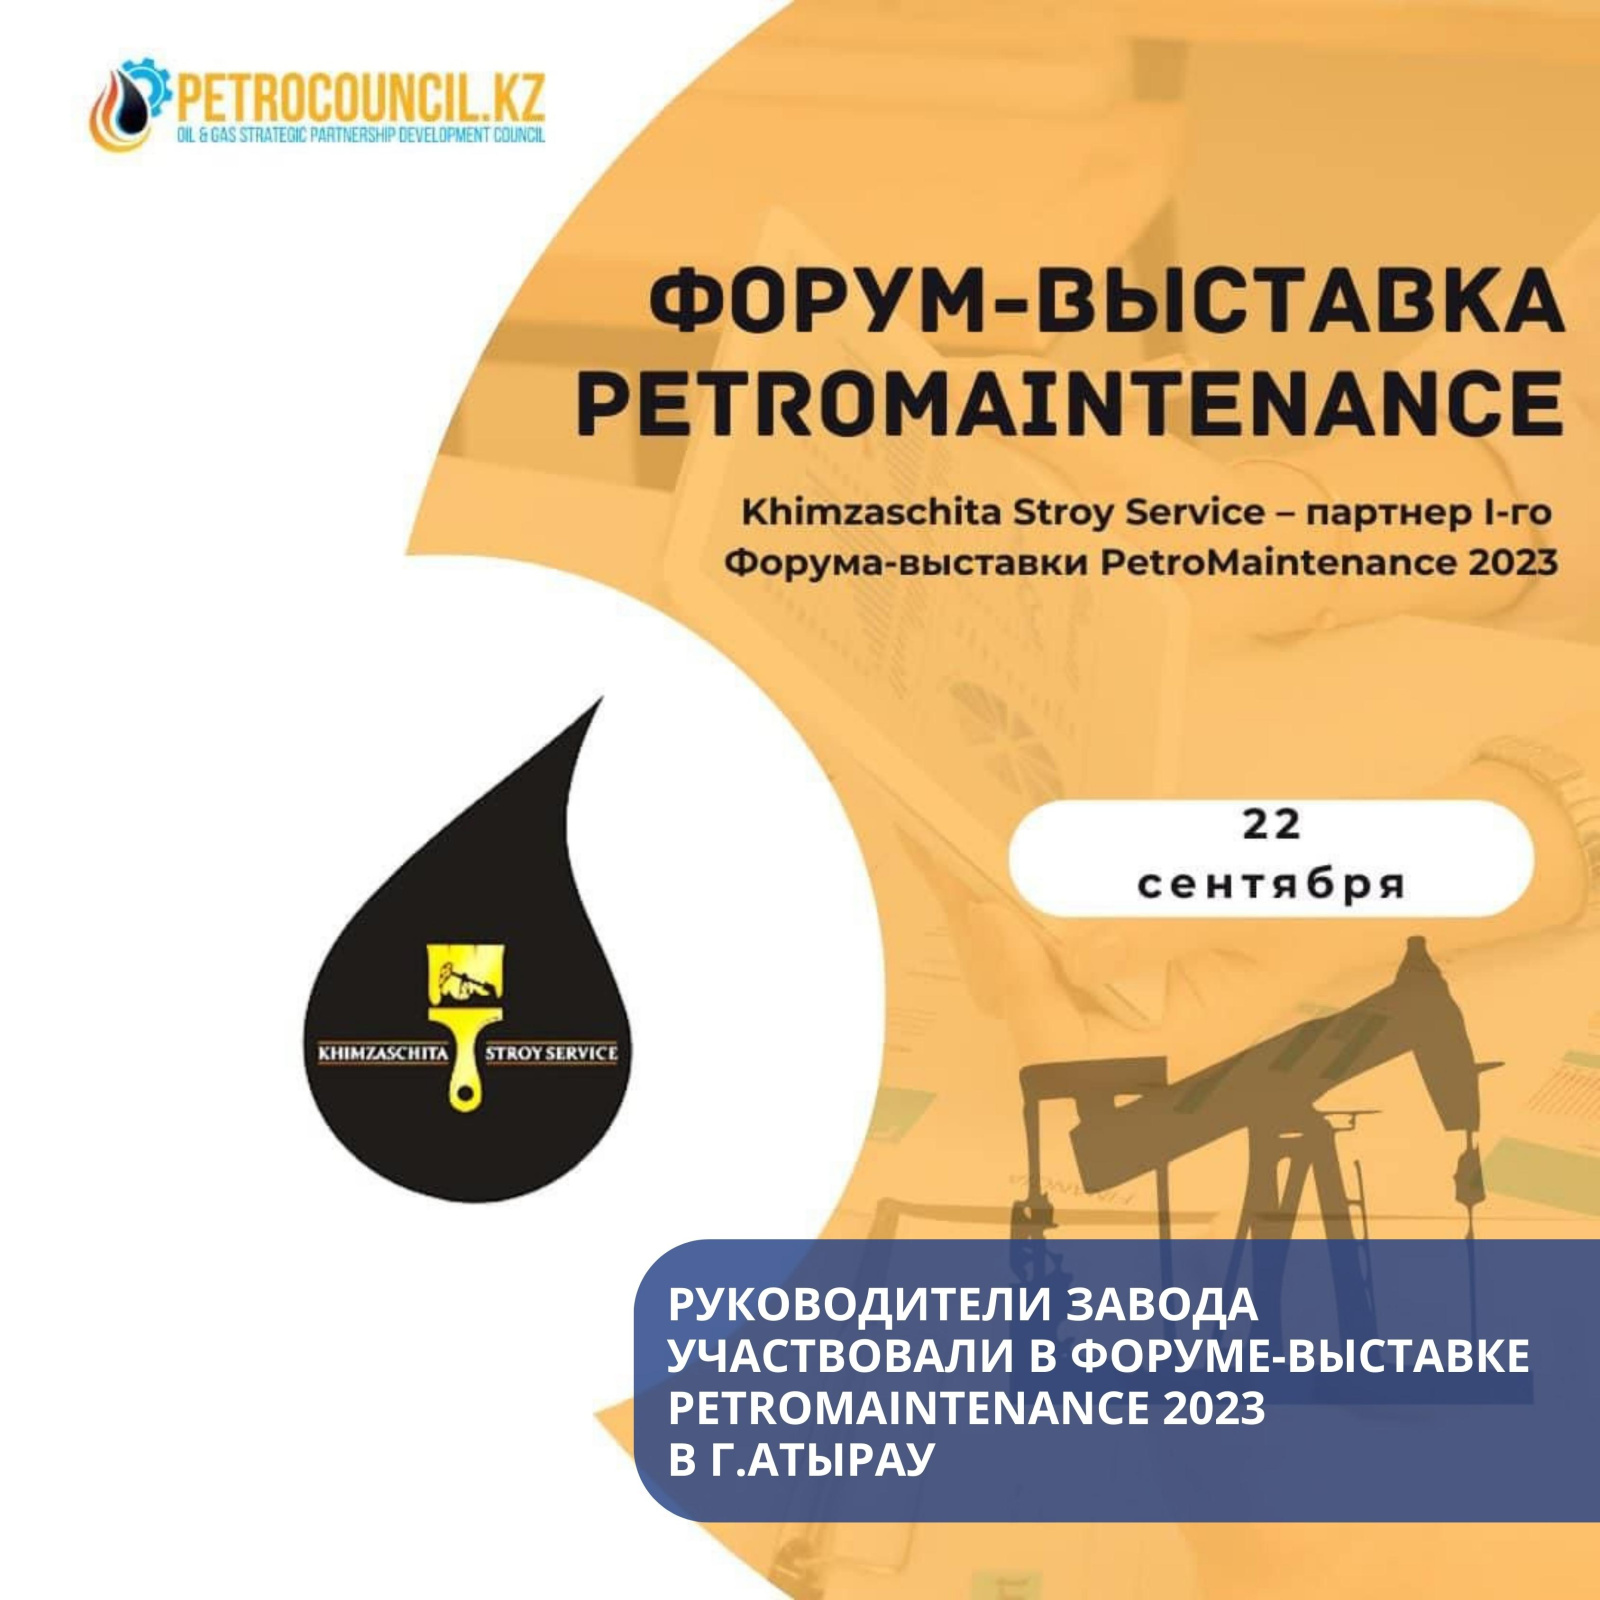 Руководство Завода ВМП Астана приняло участие в PetroMaintenance 2023 в Атырау